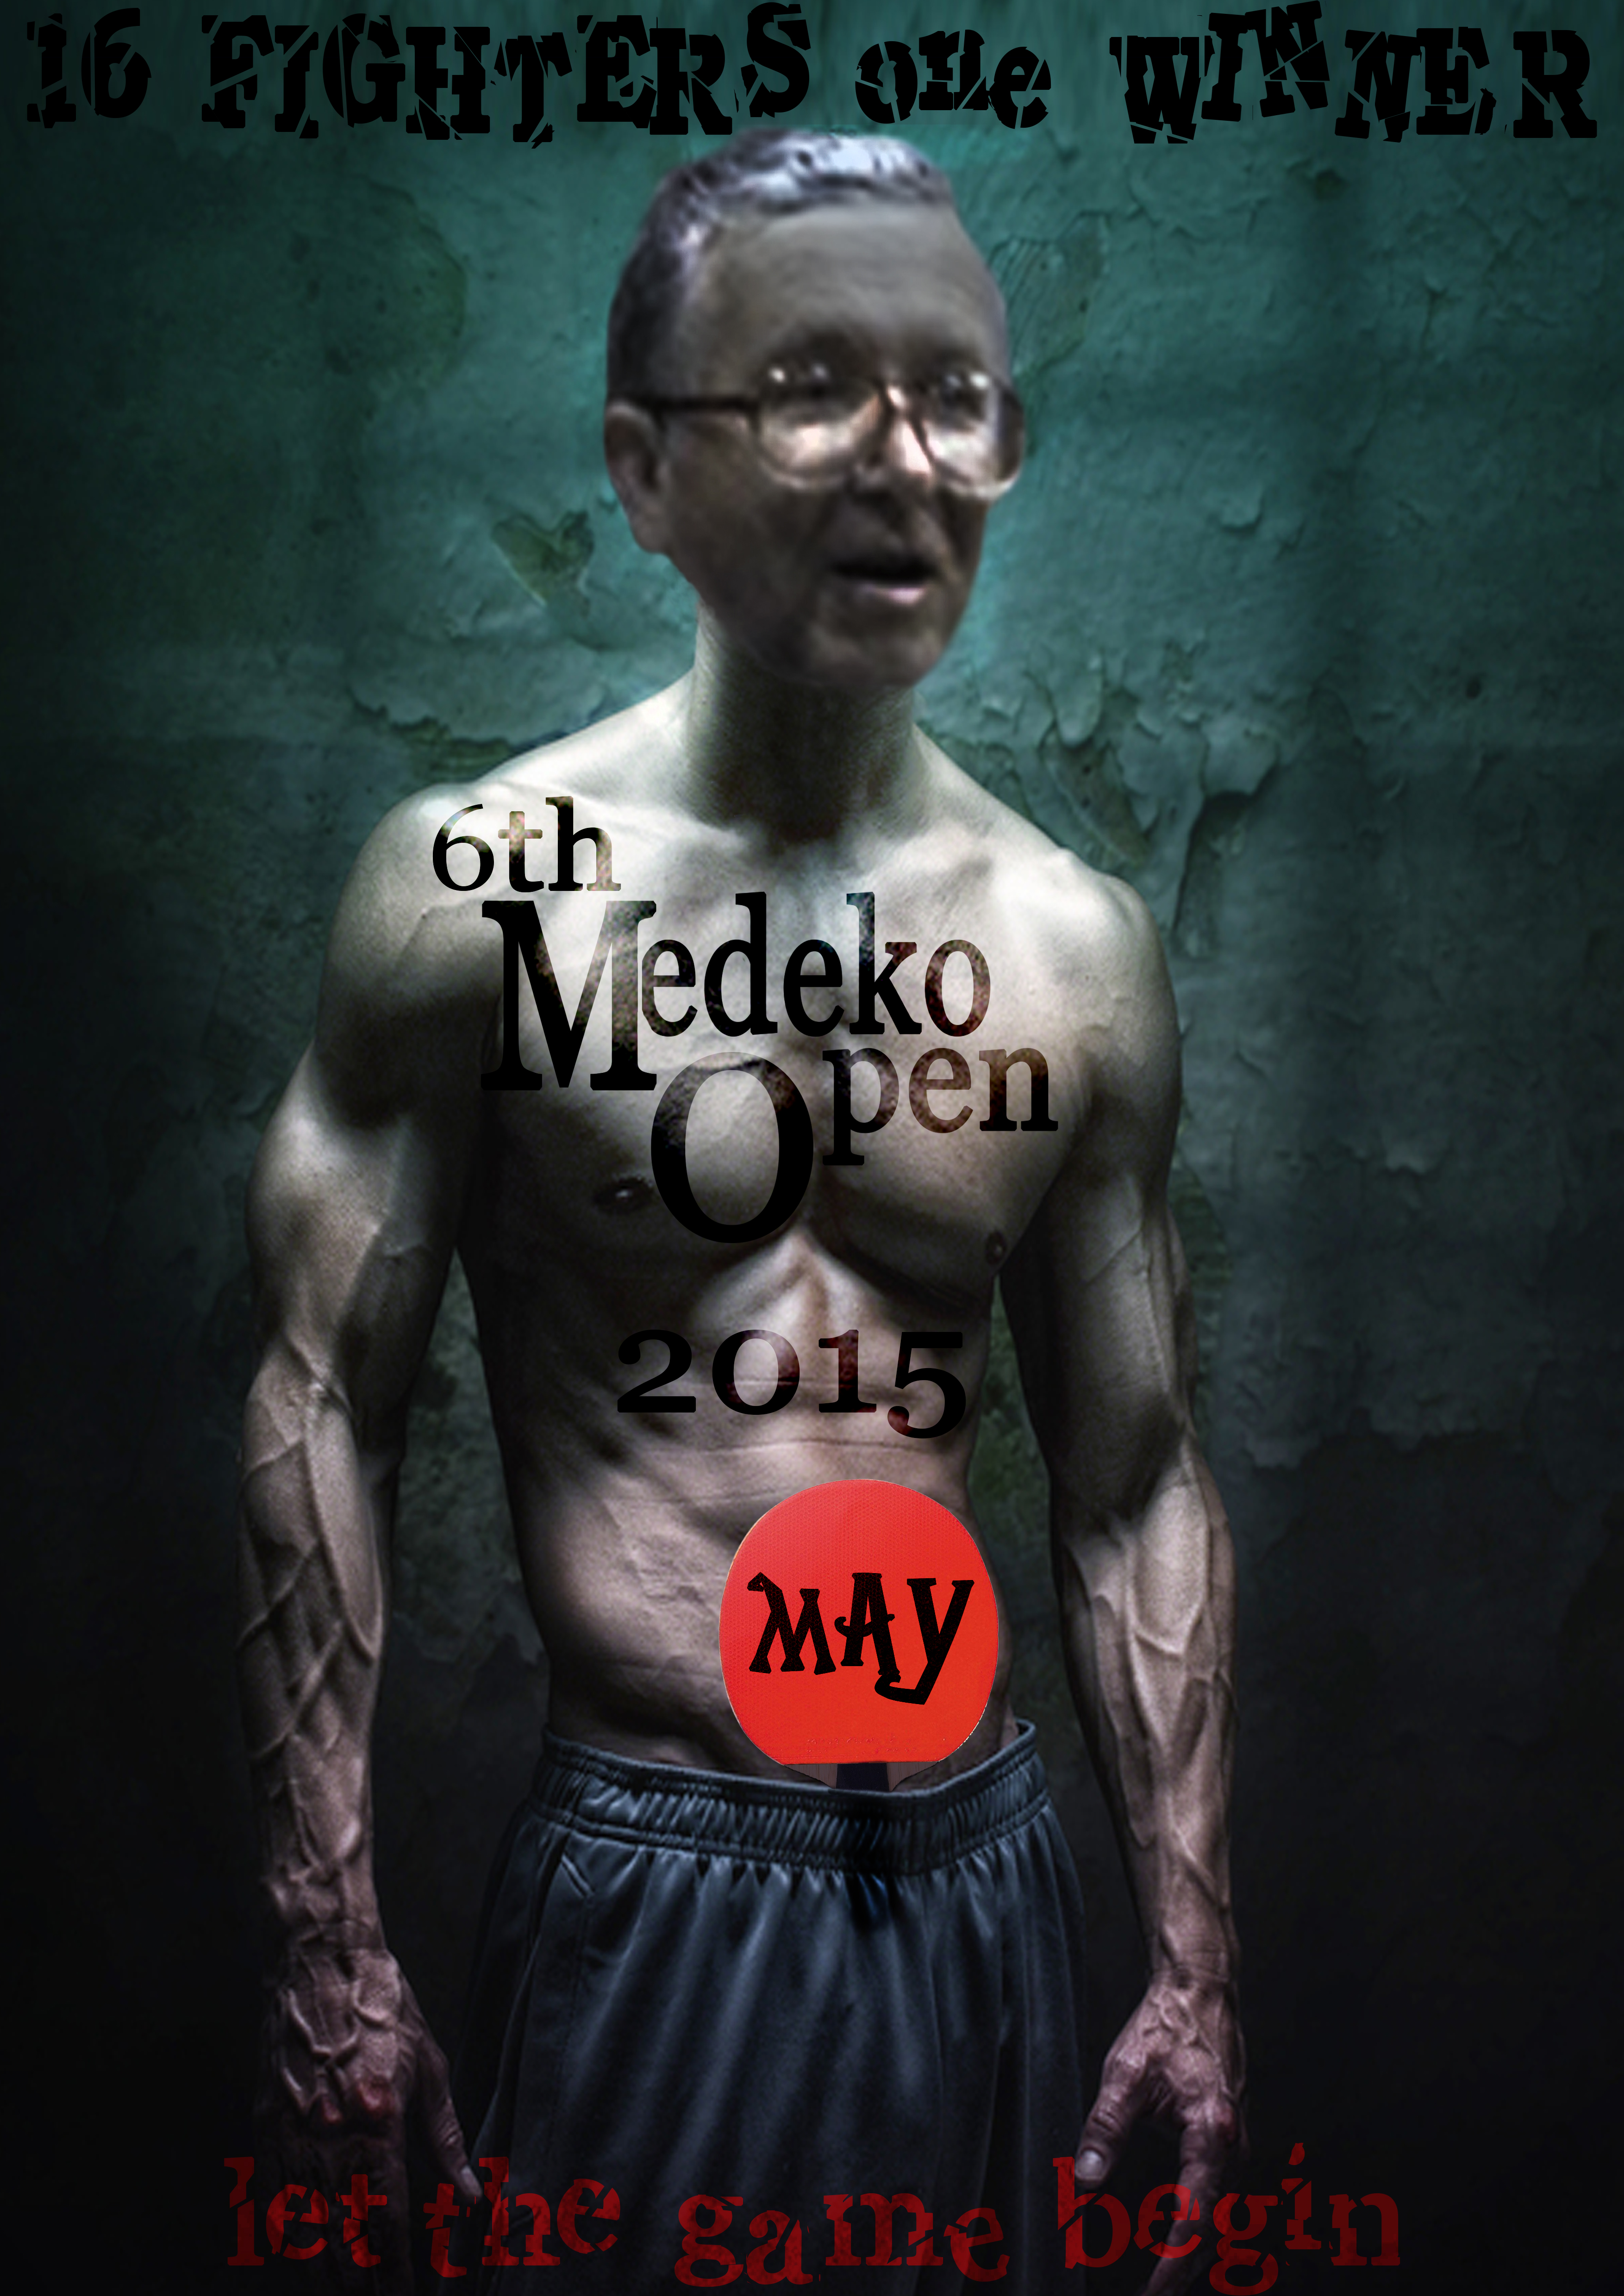 medeko open